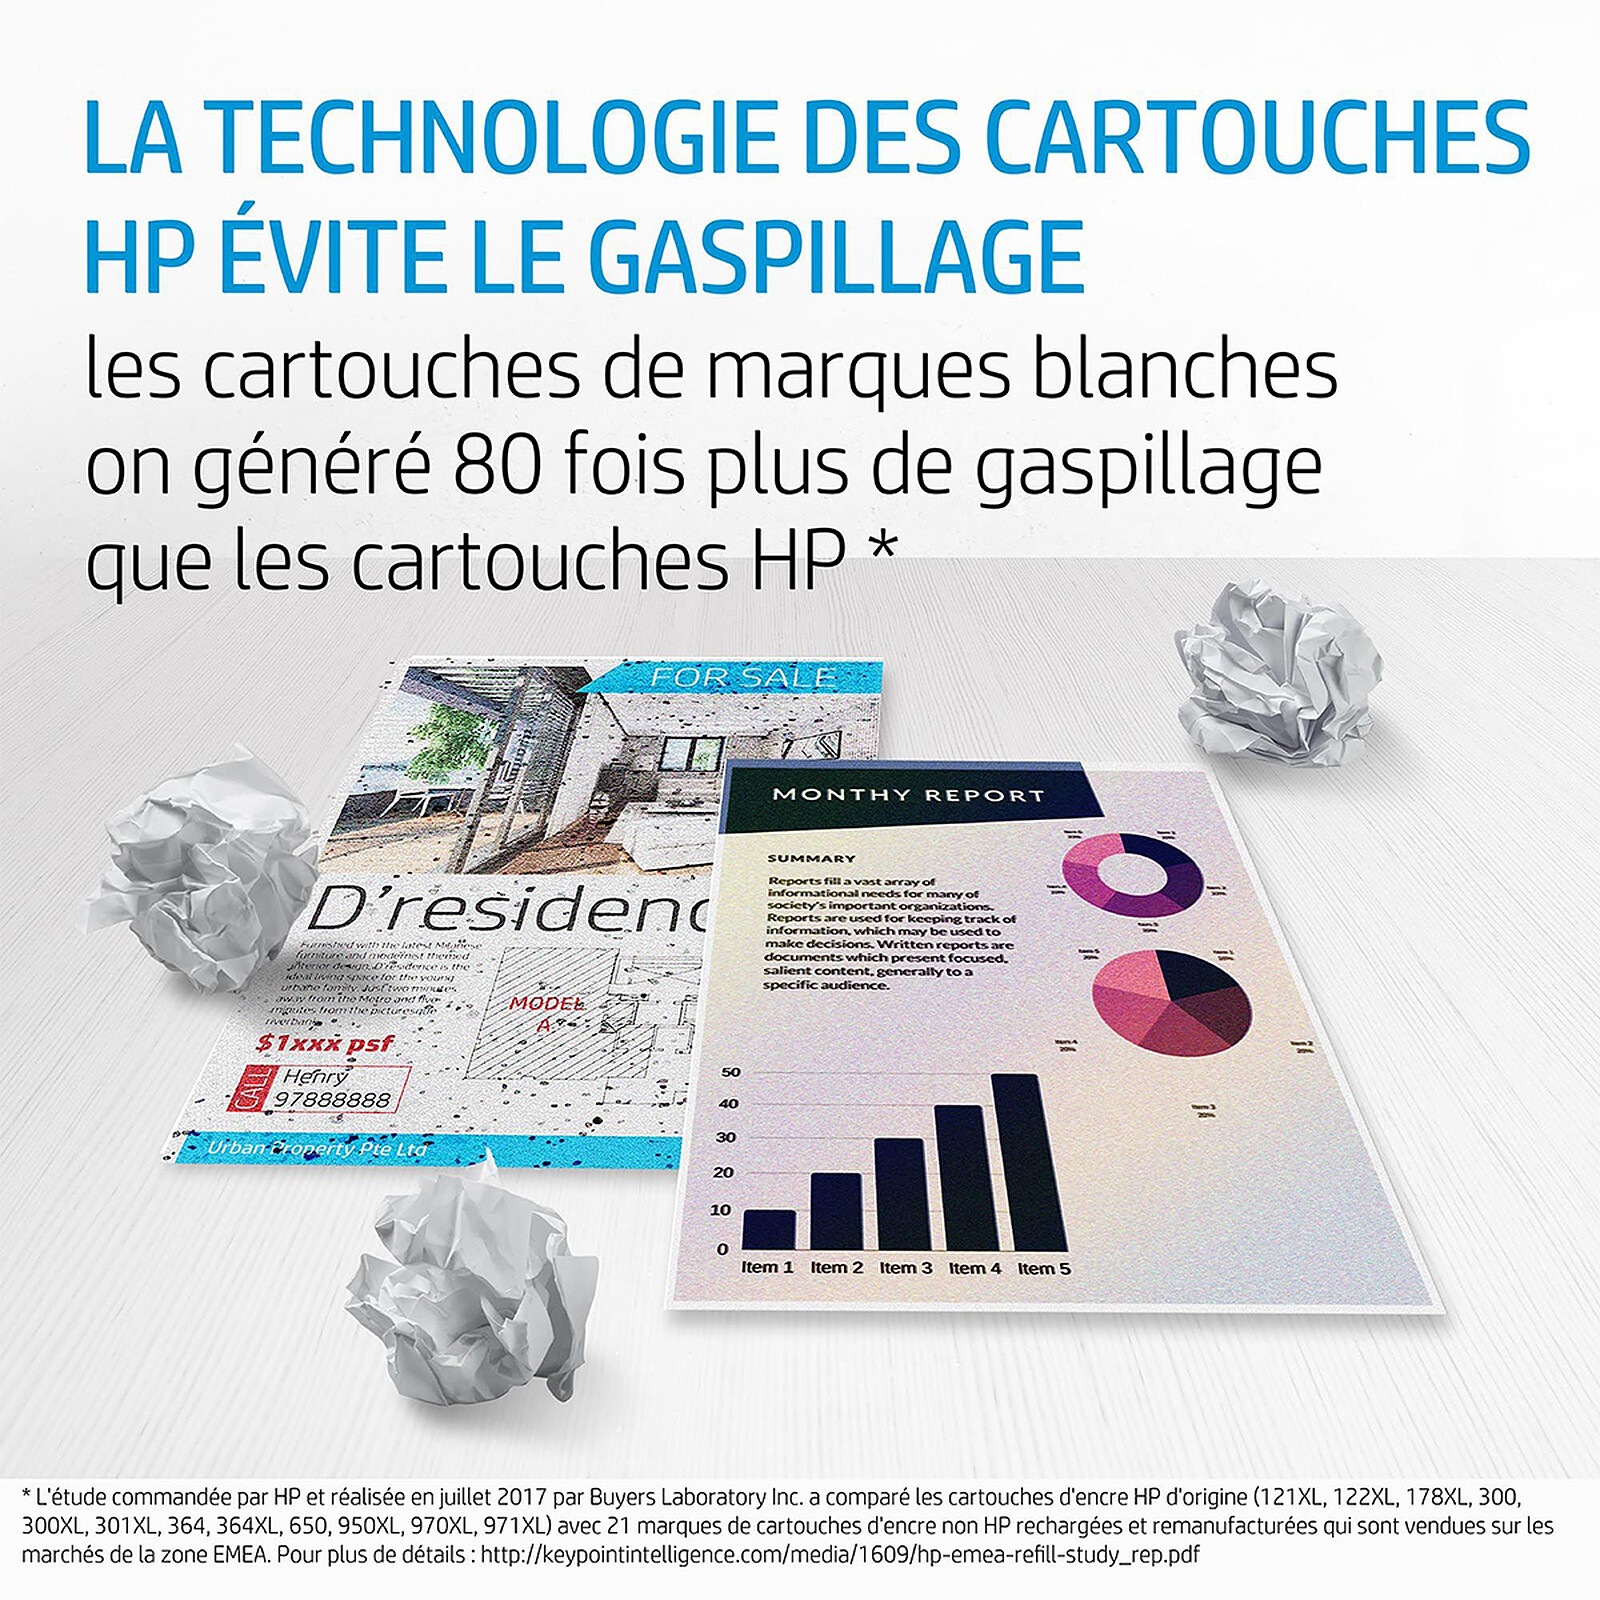 HP 903 XL Noir(e) Cartouche d'encre